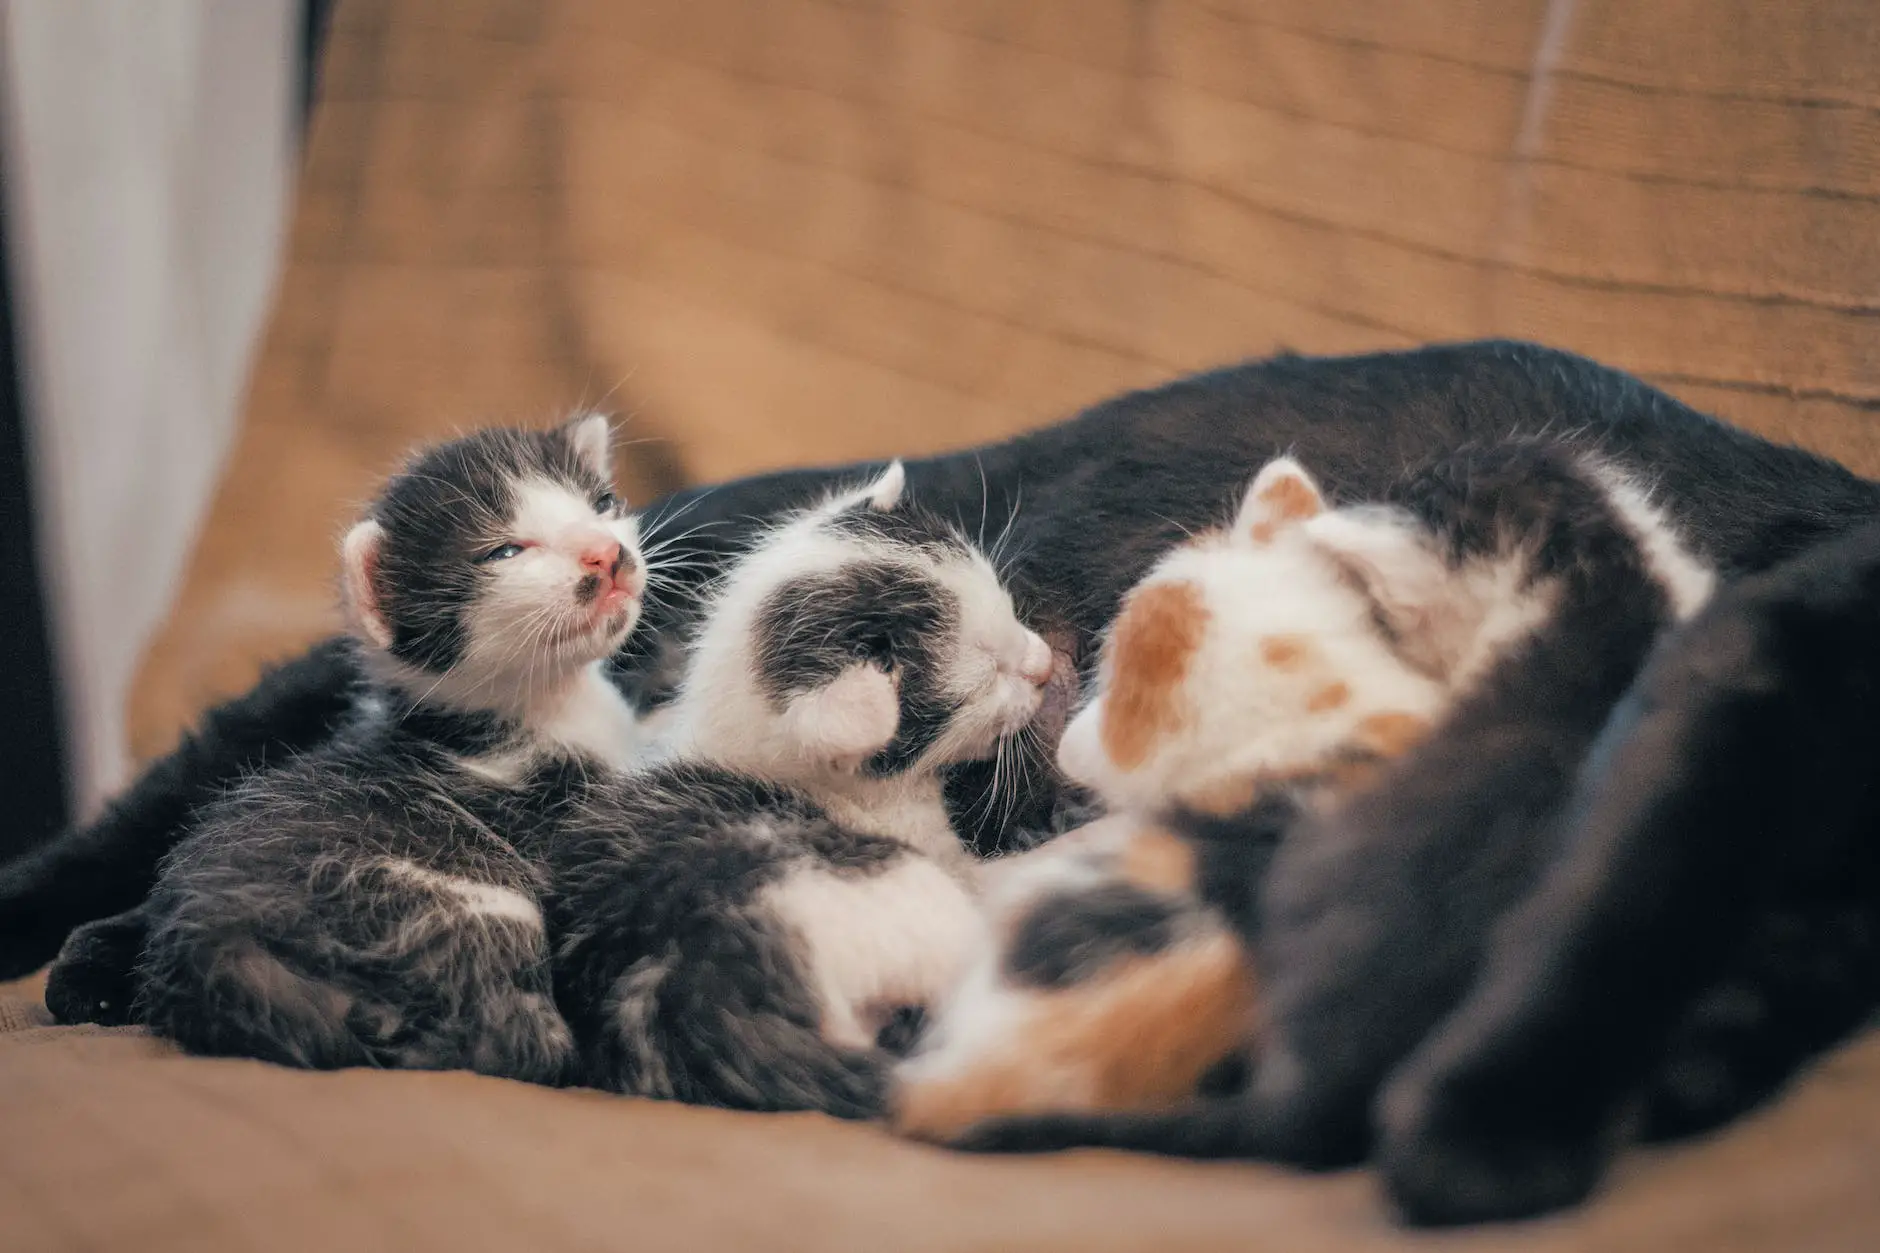 three newborn kittens